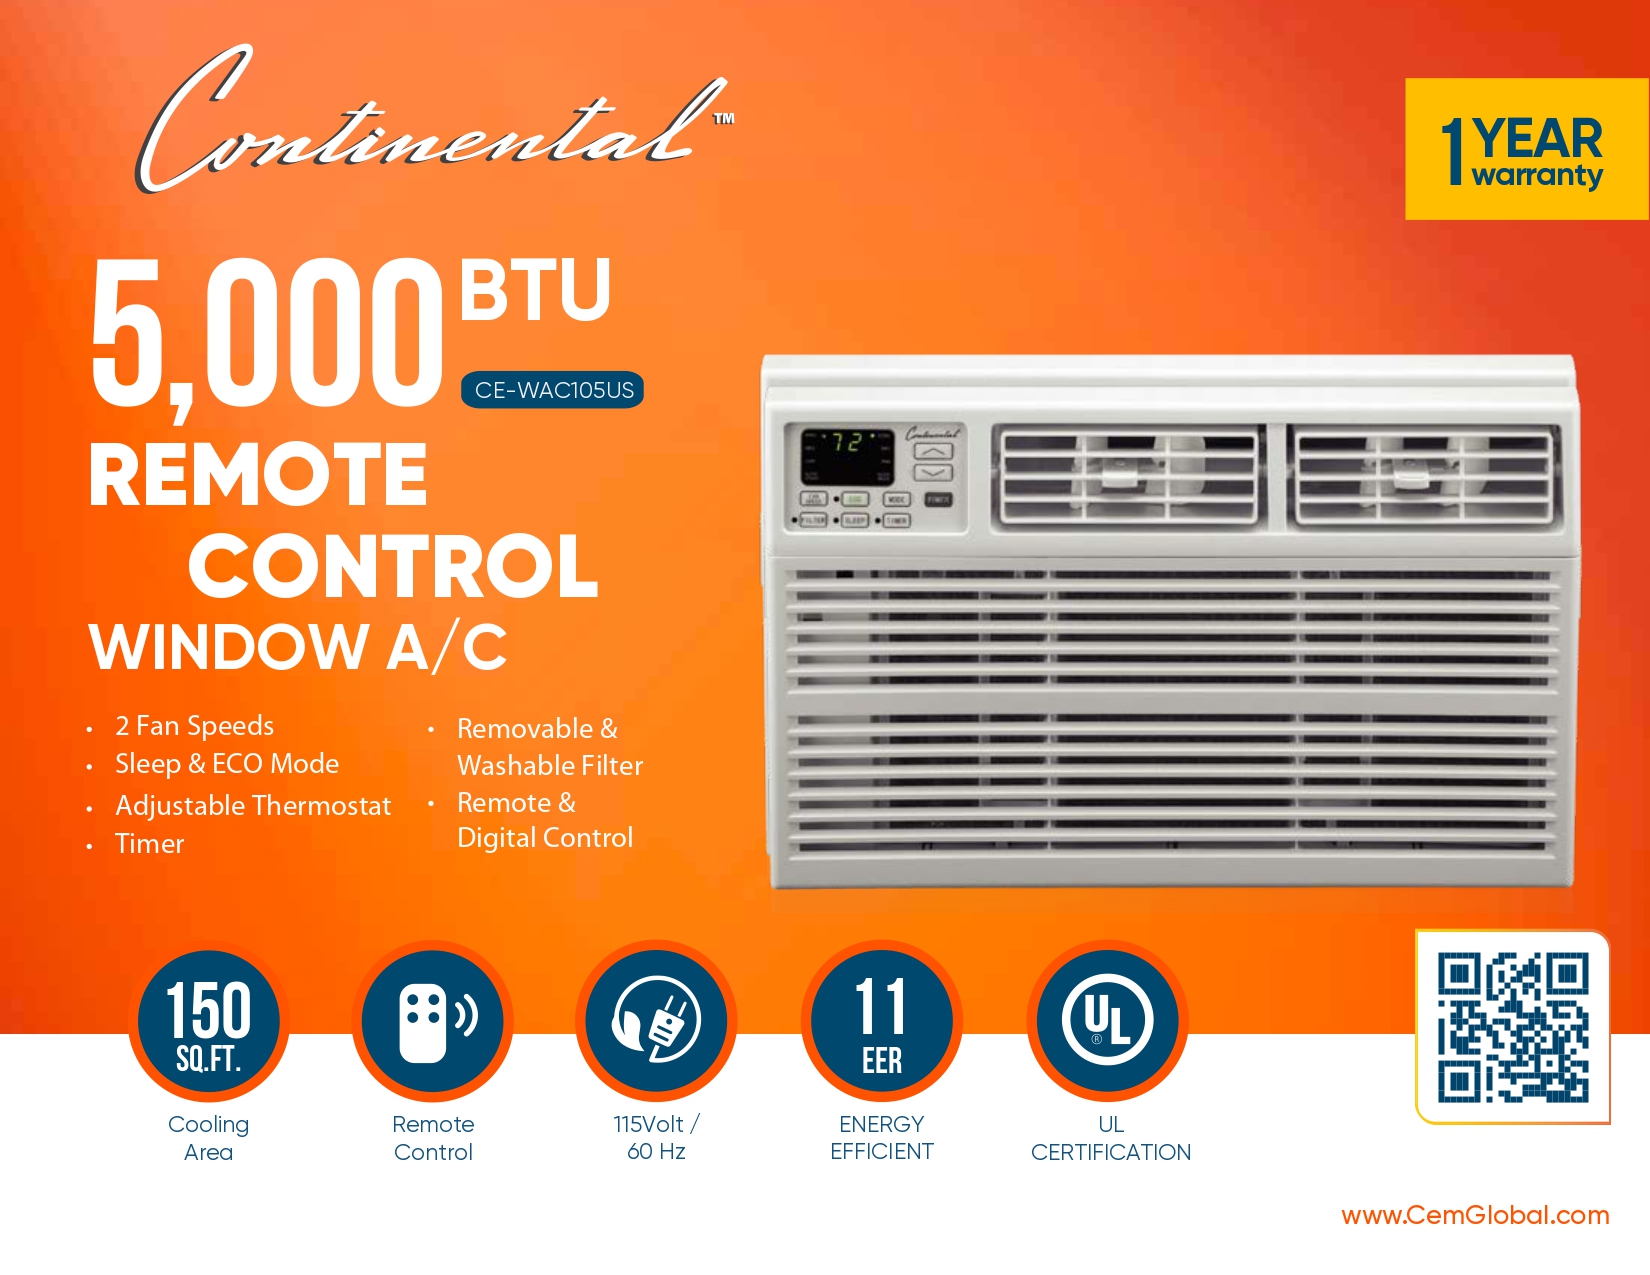 5,000 BTU REMOTE CONTROL WINDOW A/C